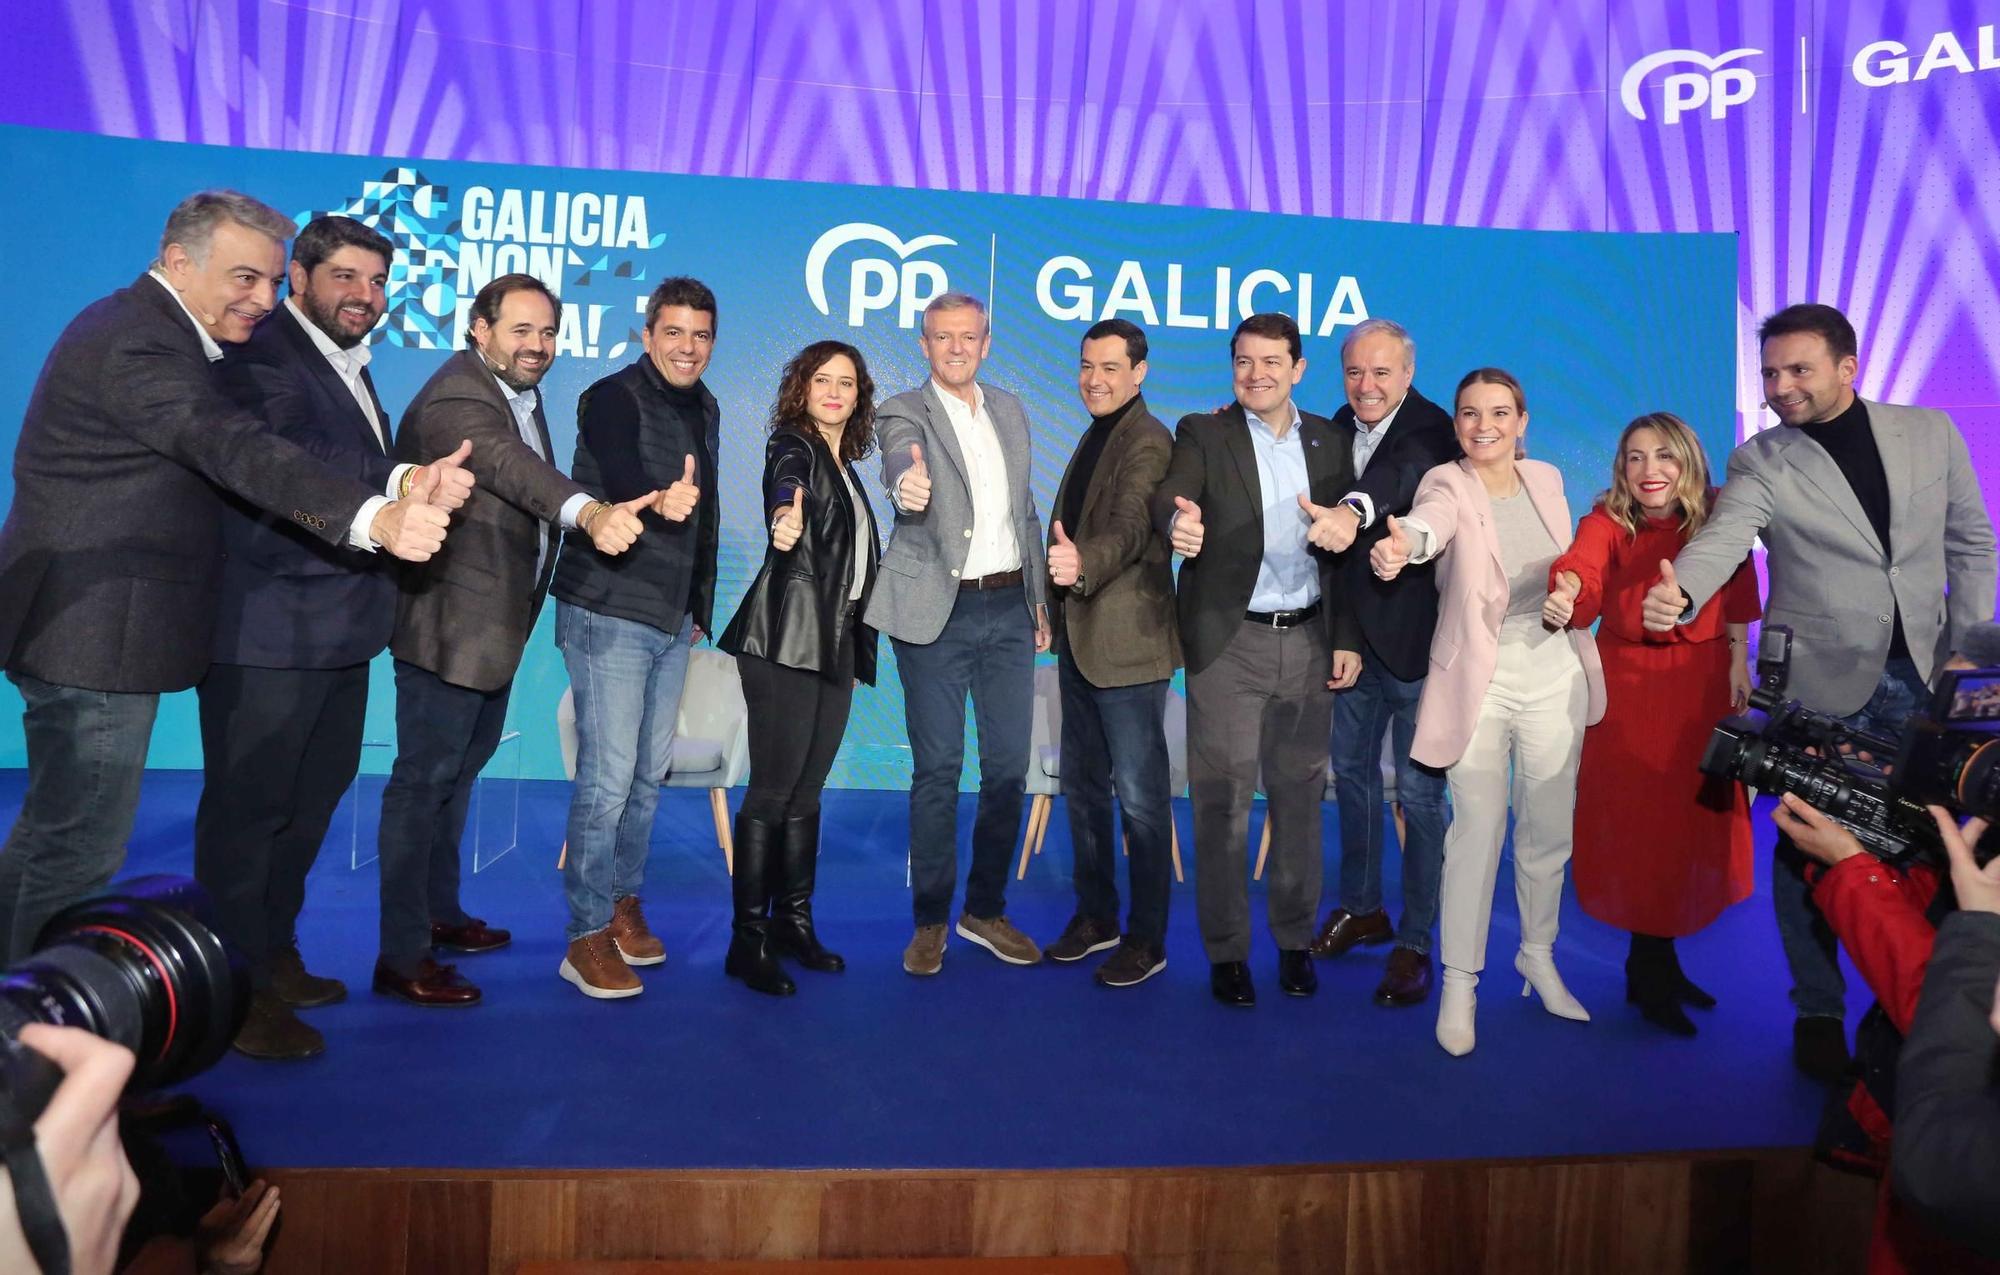 Rueda recibe en A Coruña el poyo de los líderes autonómicos del PP